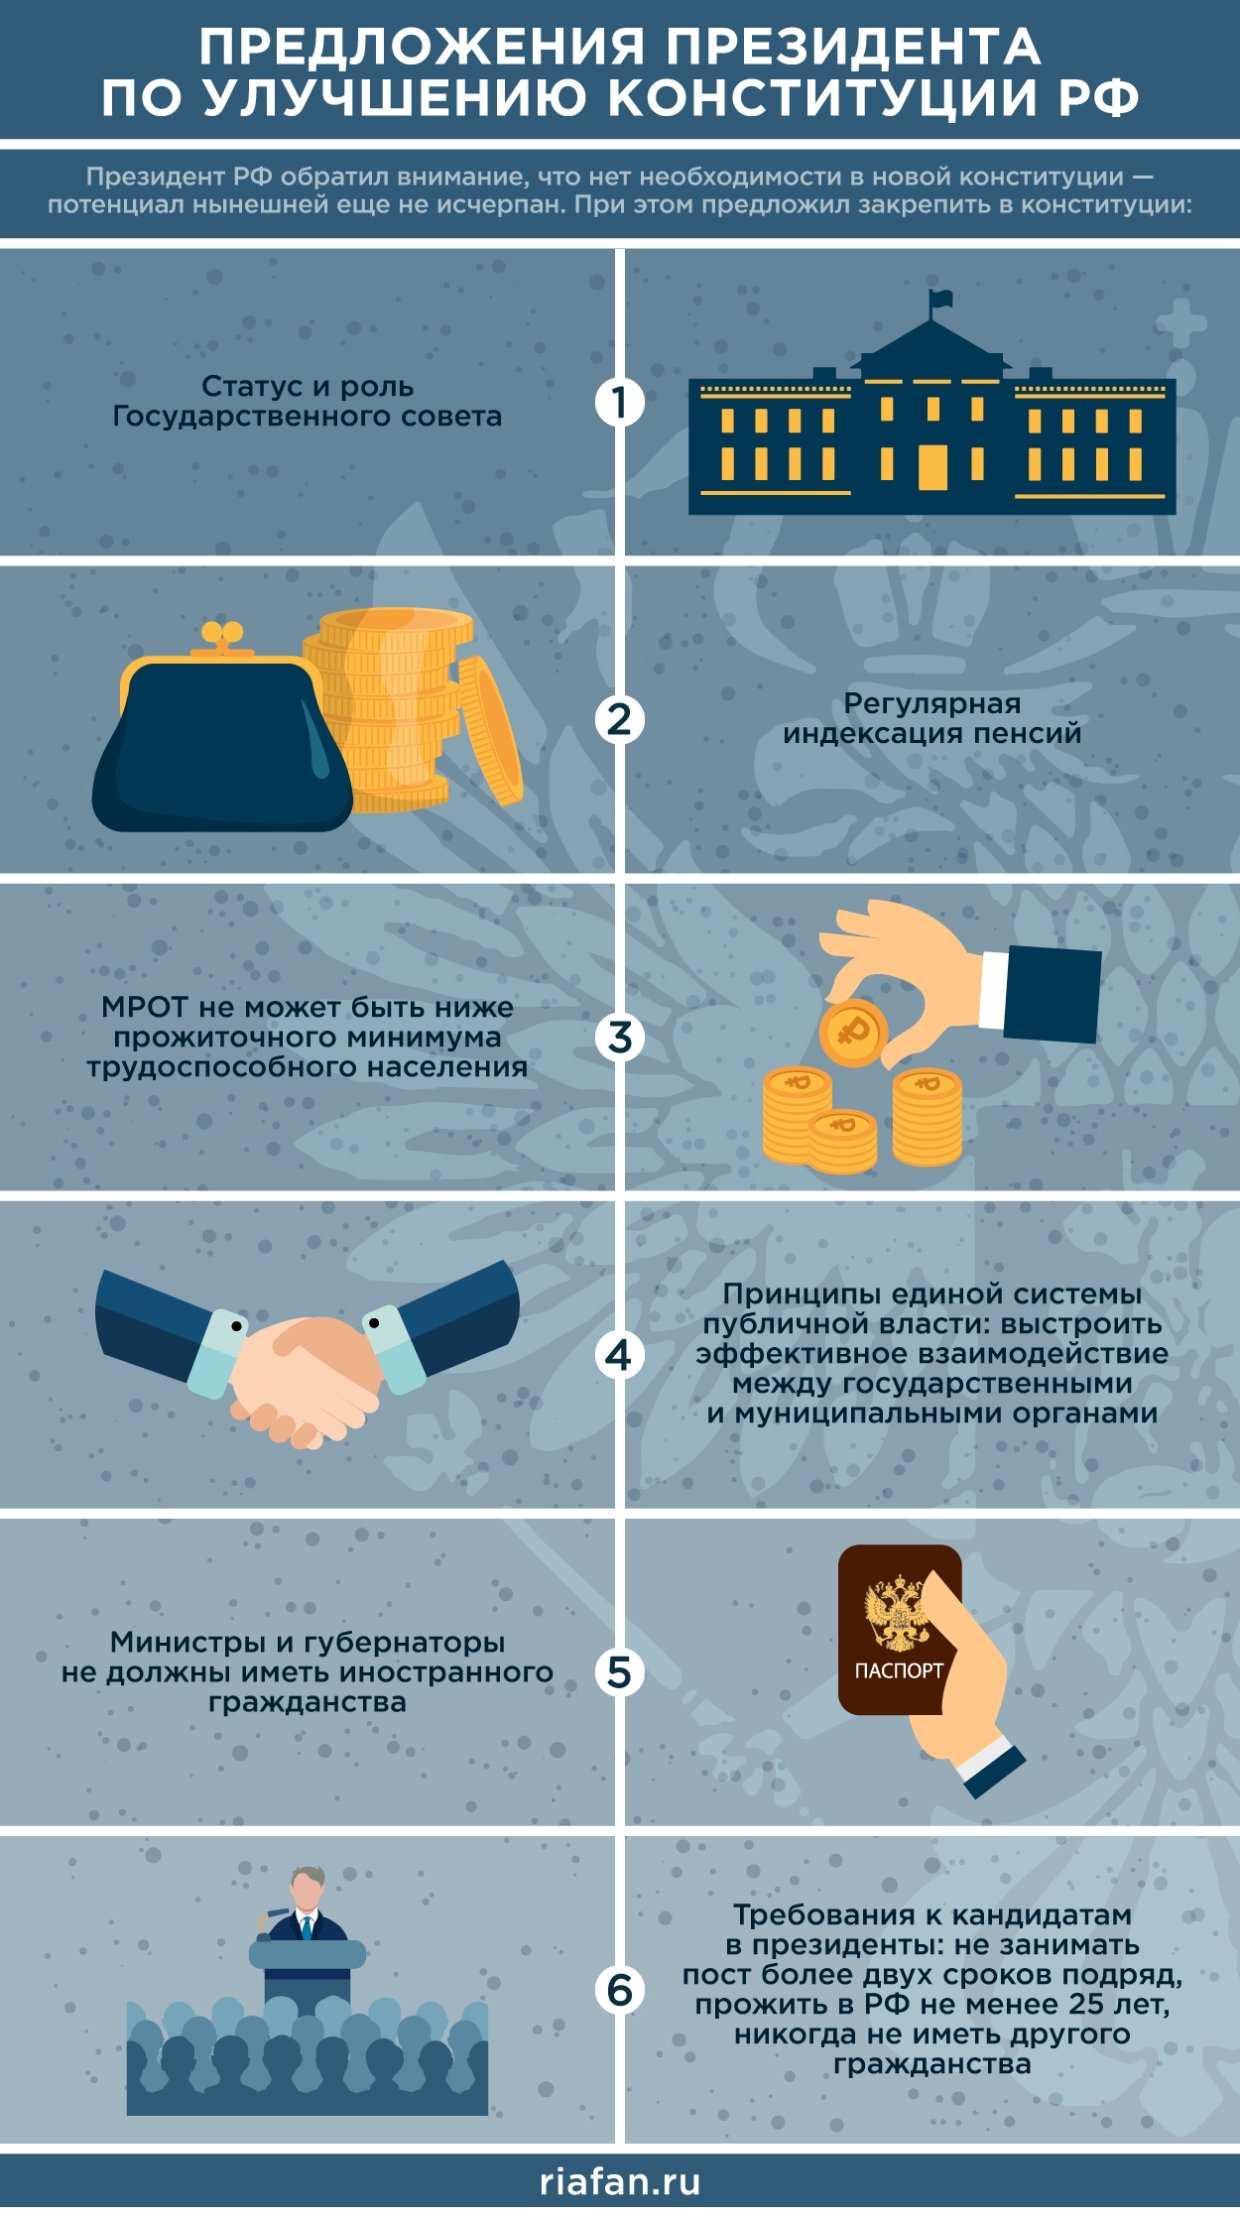 Предстоящая реформа конституции призвана усилить Россию, а также законодательно закрепить важнейшие права граждан